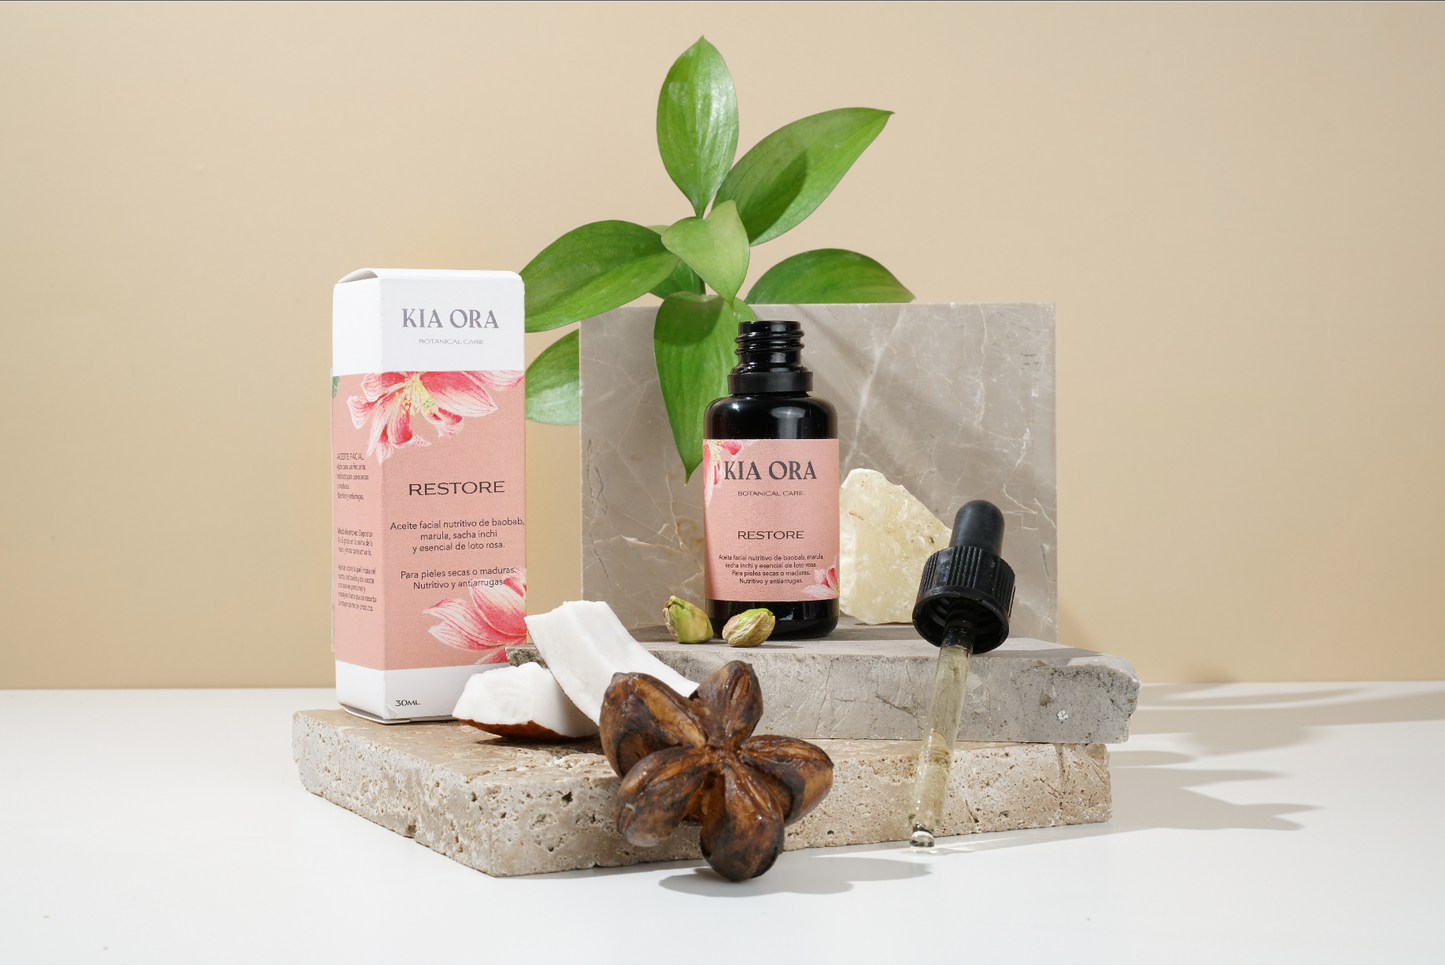 RESTORE - Aceite facial nutritivo de baobab, marula, sacha inchi y esencial de loto rosa